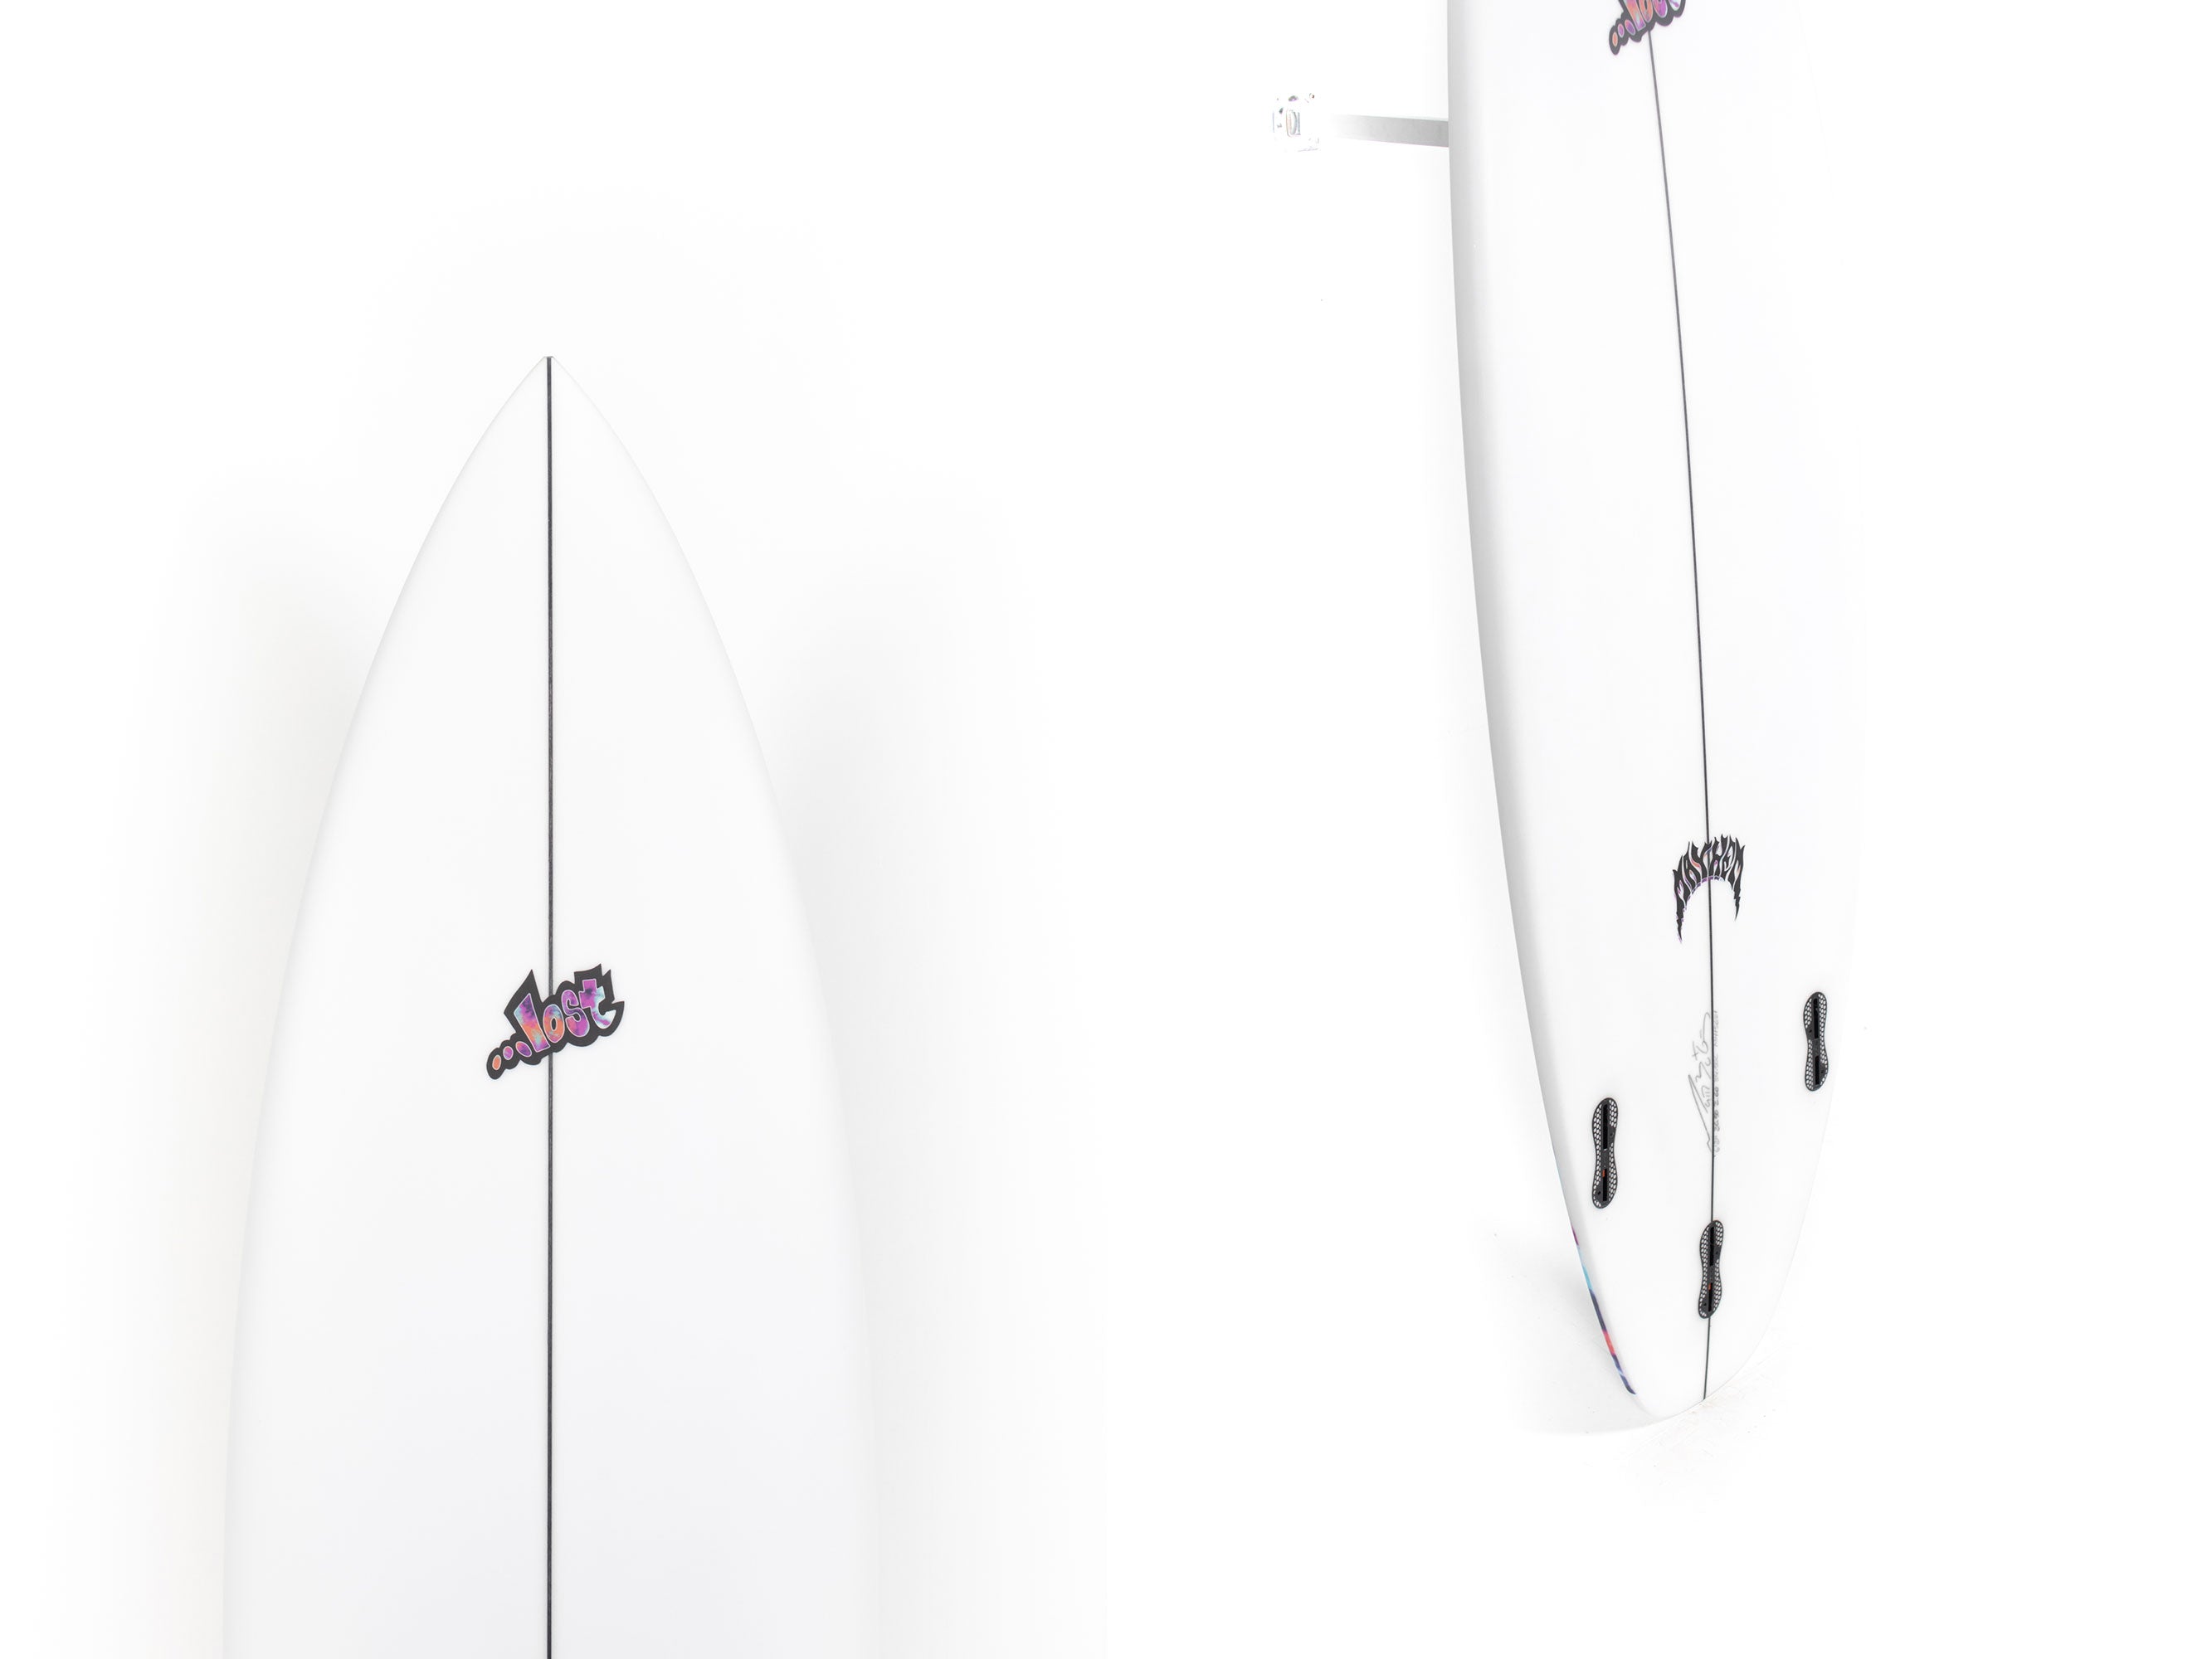 Lost Surfboards - LITTLE WING by Matt Biolos - 6’2” x 20'50 x 2,60 - 34'50L - MH15621